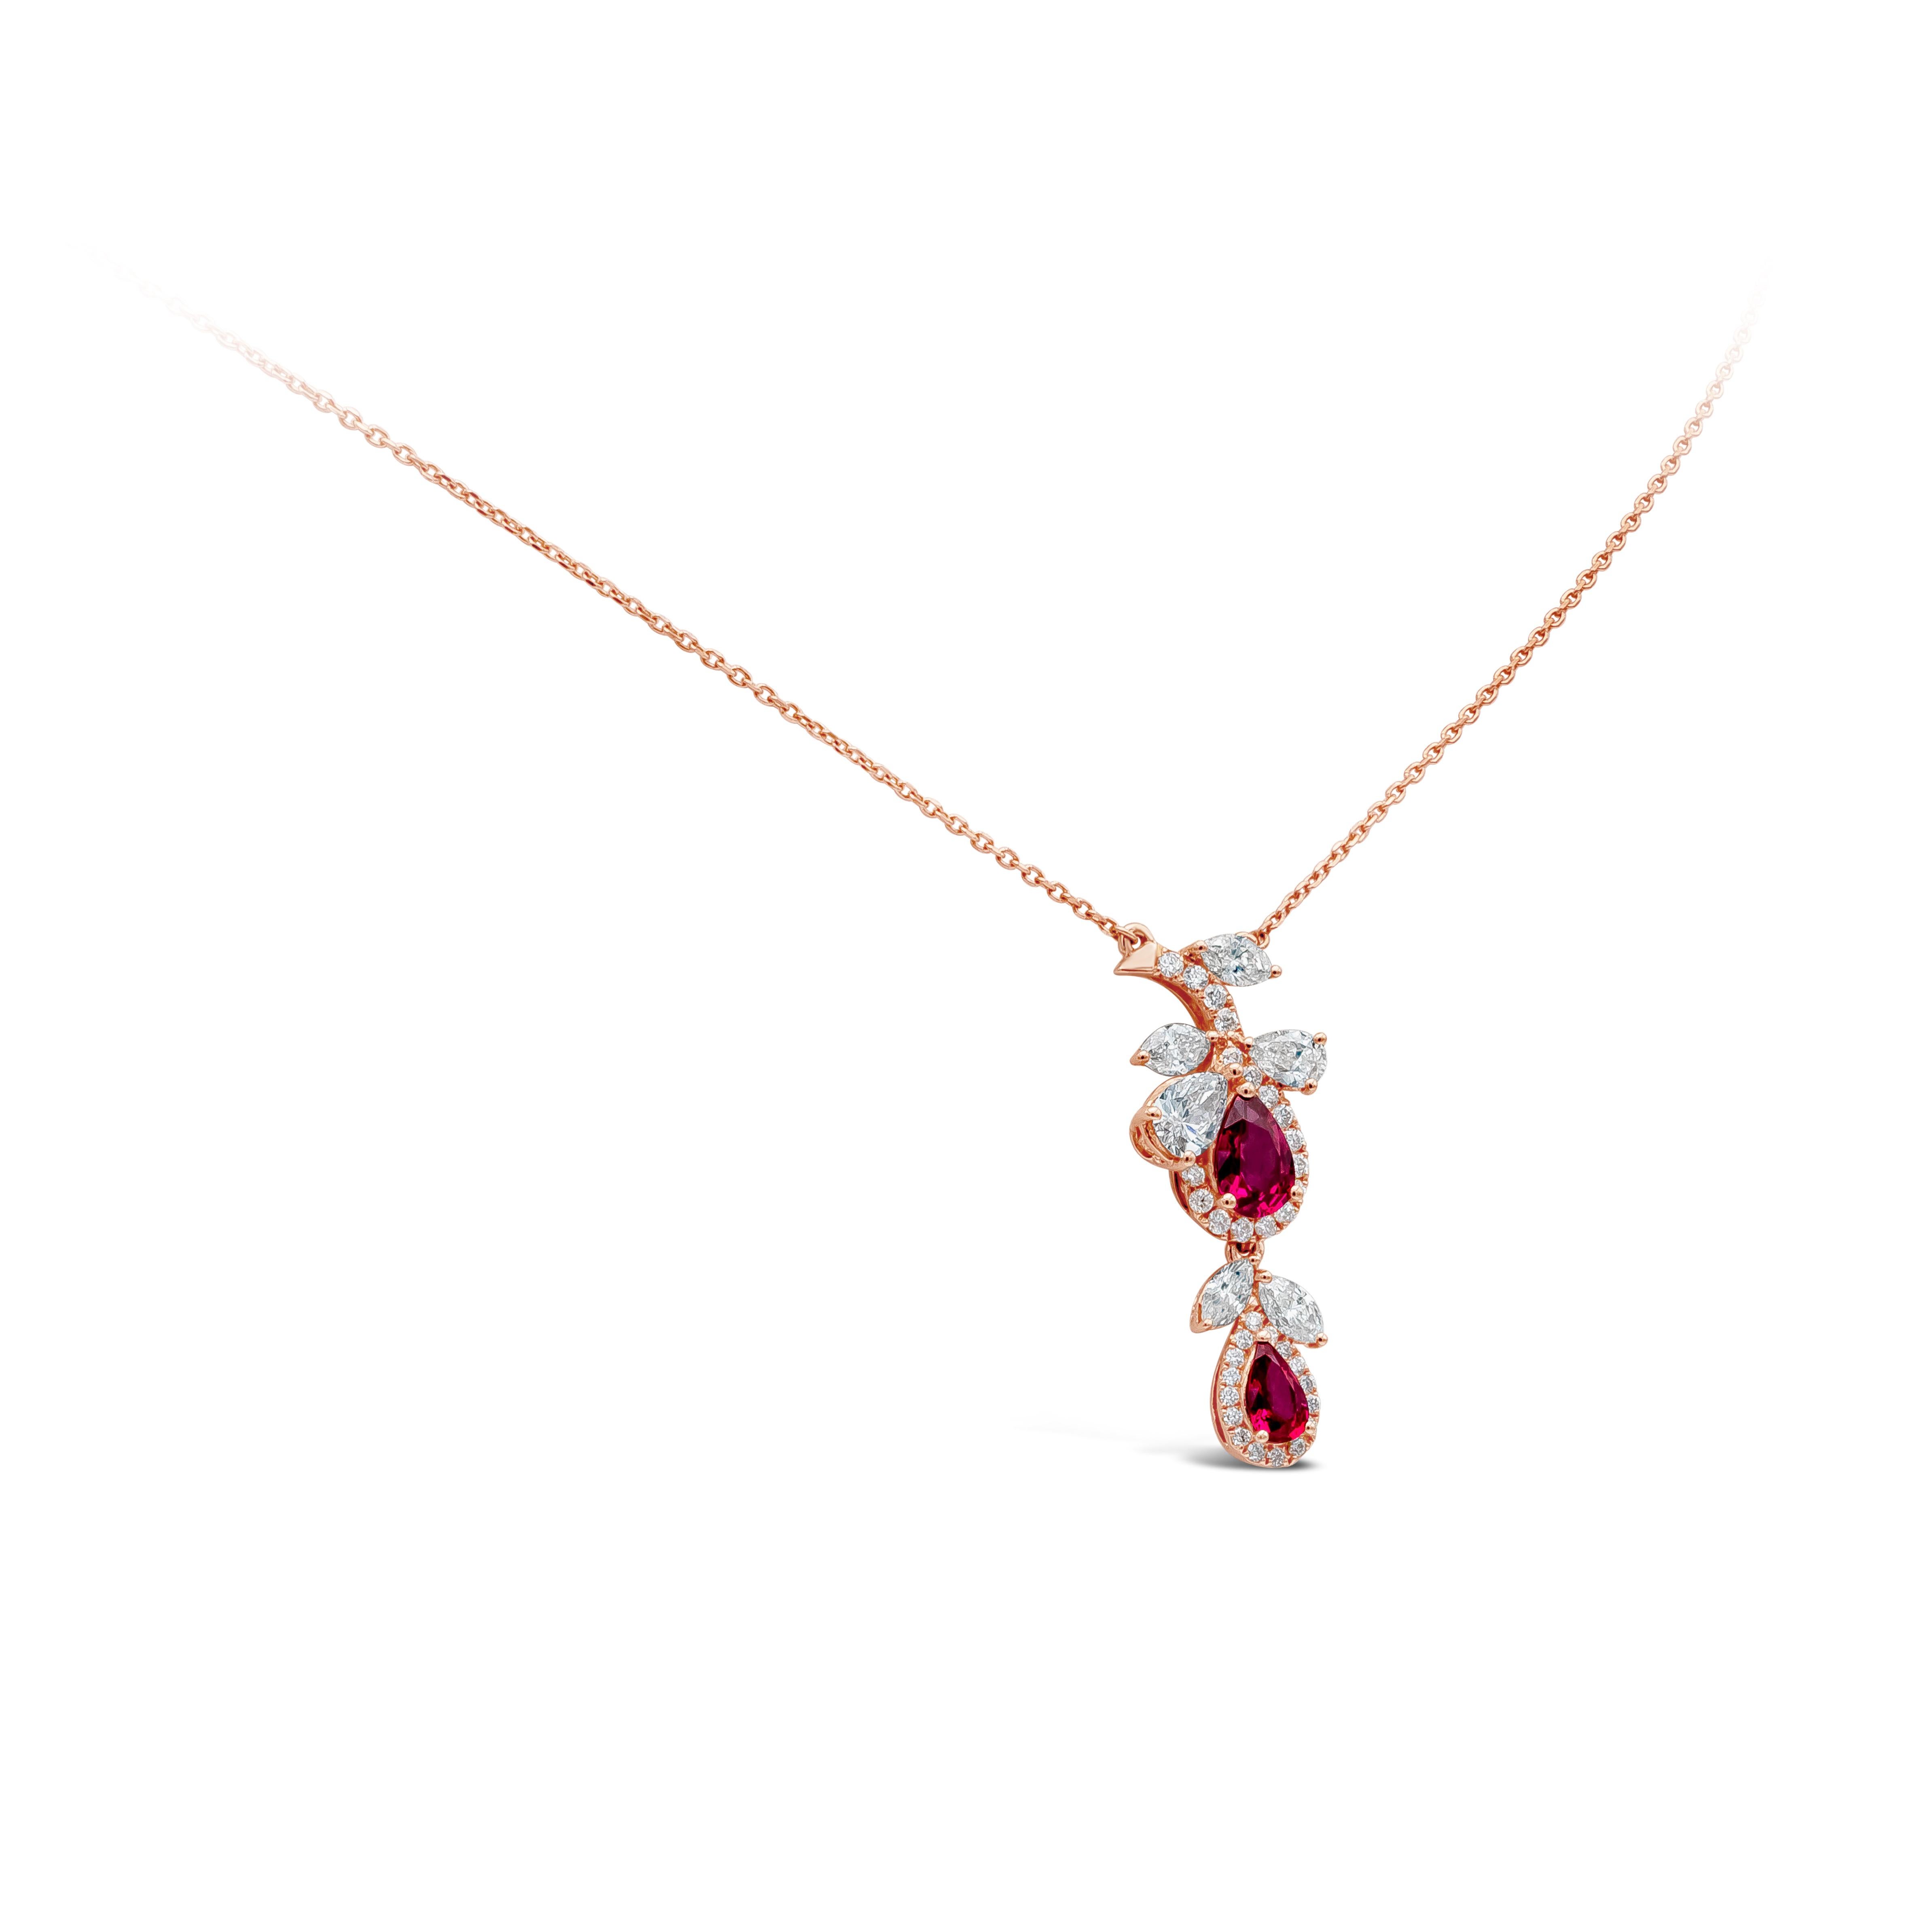 Collier à motif floral composé d'un rubis poire pesant environ 0,62 carat, accentué par des diamants de forme mixte pesant environ 0,78 carat, de couleur FGG et de pureté VS.
Suspendu à une chaîne en or rose de 18 pouces.

Roman Malakov est une